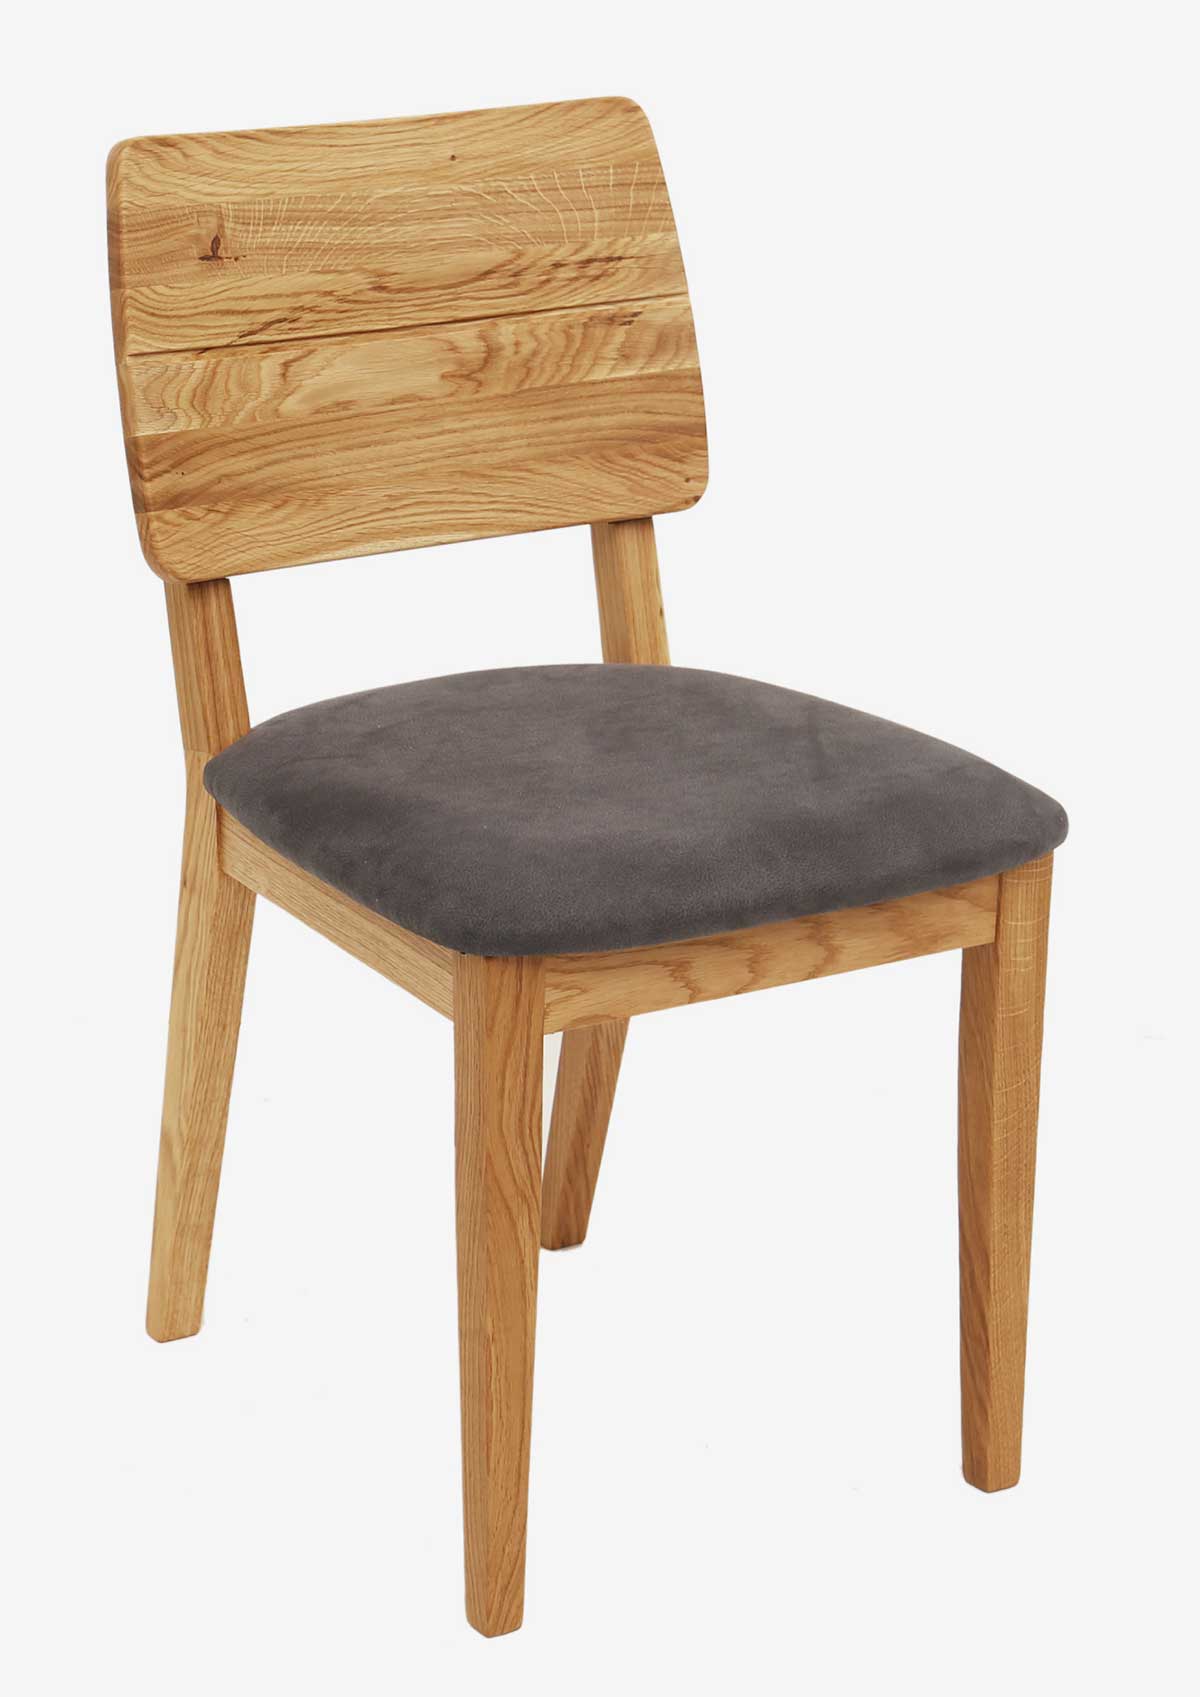 Standard Furniture Bergen Holzstuhl eiche massiv mit Sitzolster